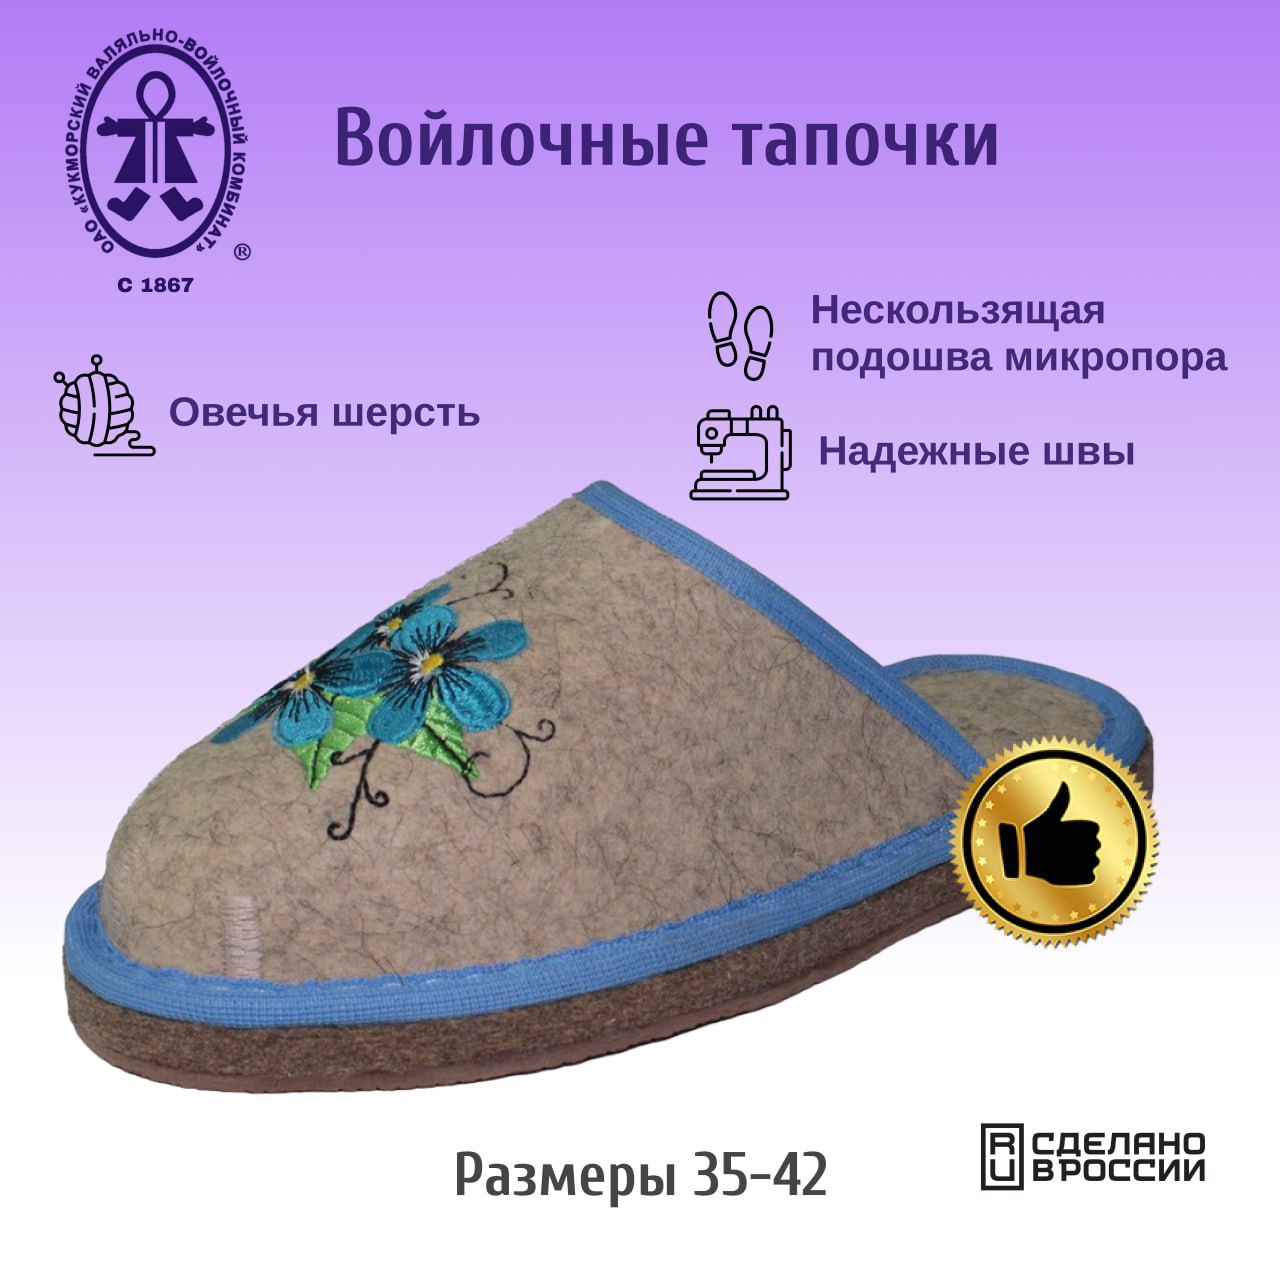 Женские голубые тапочки Кукморские валенки Т-30МП, размер 39 по российской шкале.